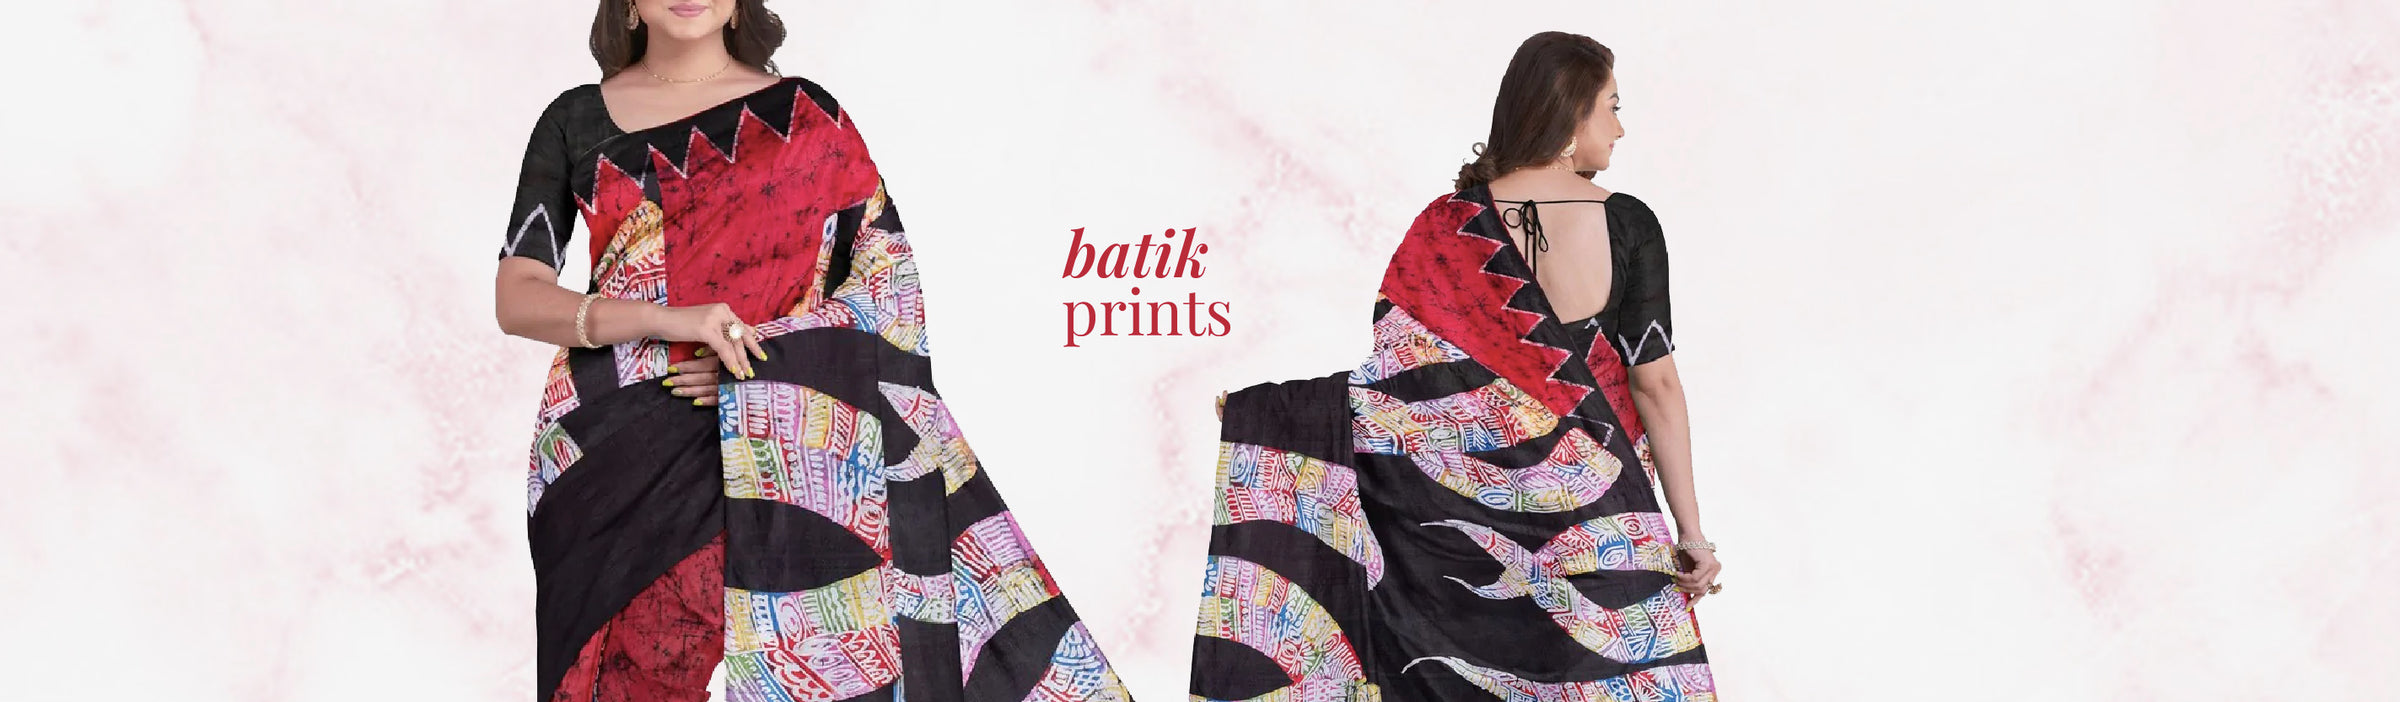 Batik dye print collection